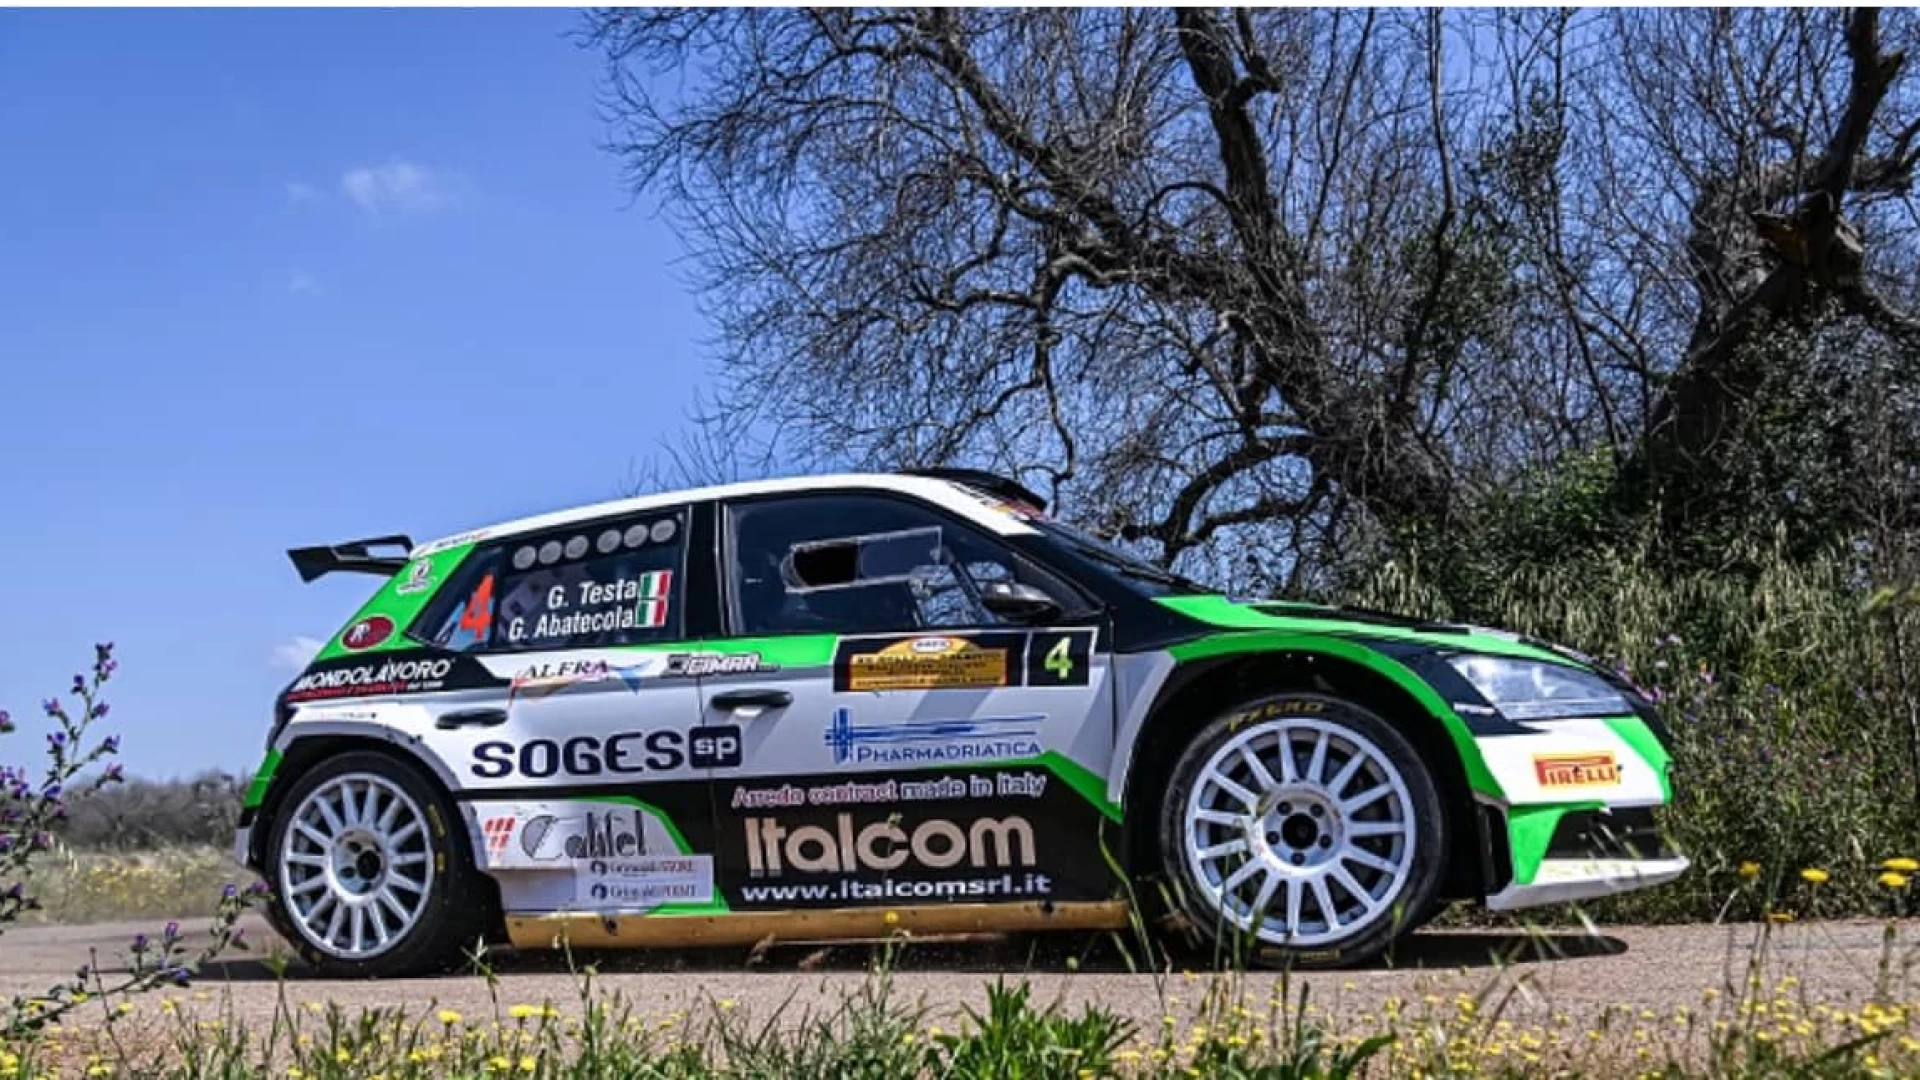 Trofeo Italiano Rally, Giuseppe Testa si mantiene al vertice della classifica dopo il terzo posto al Rally di San Martino di Castrozza